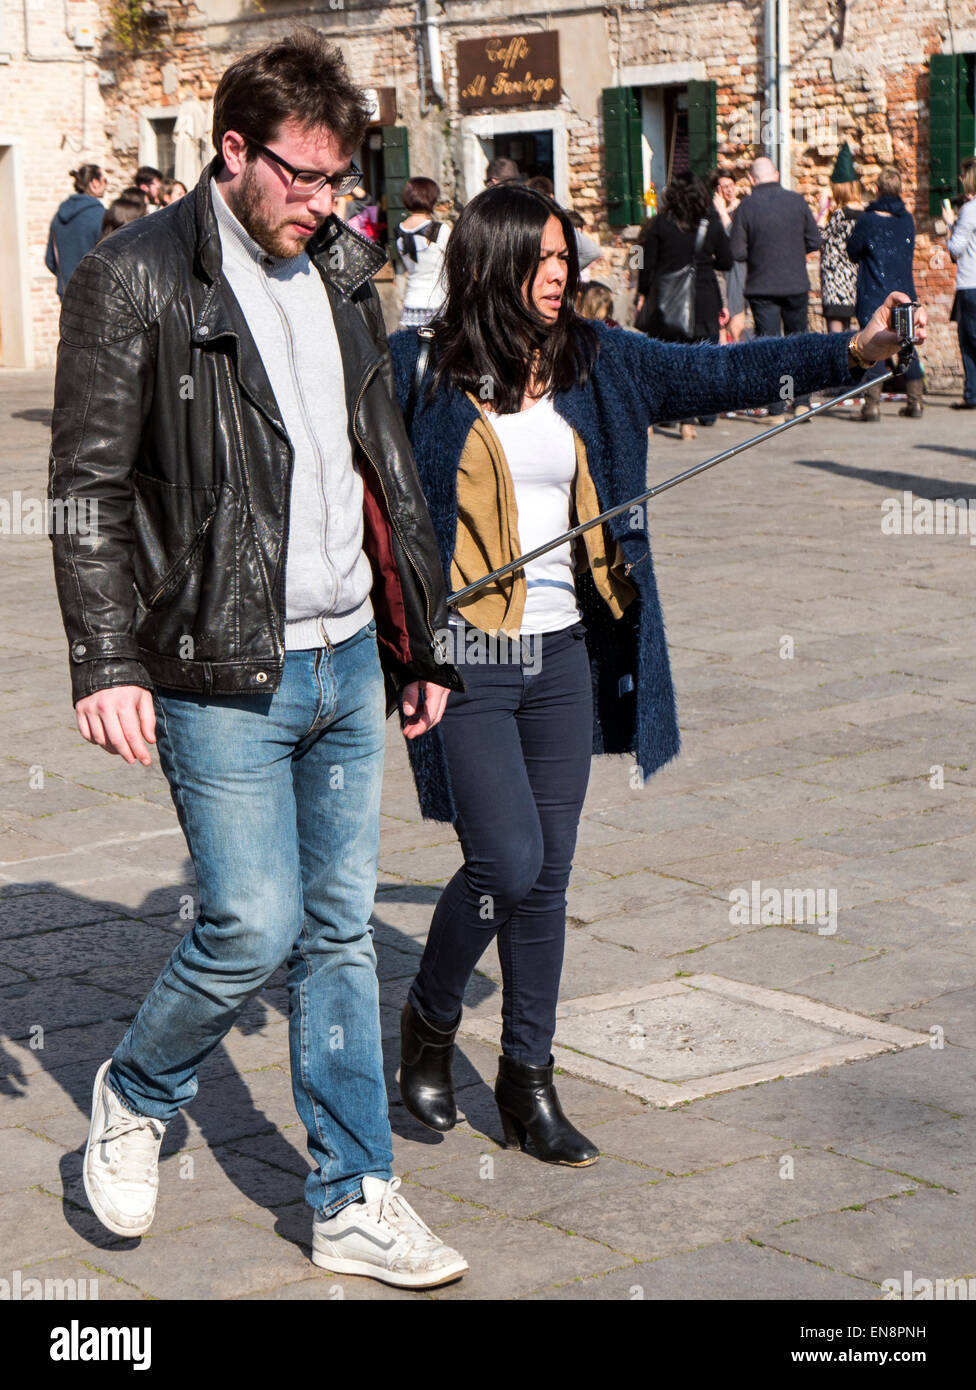 Les touristes avec caméra GoPro sur stick pour les autoportraits, Venise, Italie, ville des canaux Banque D'Images